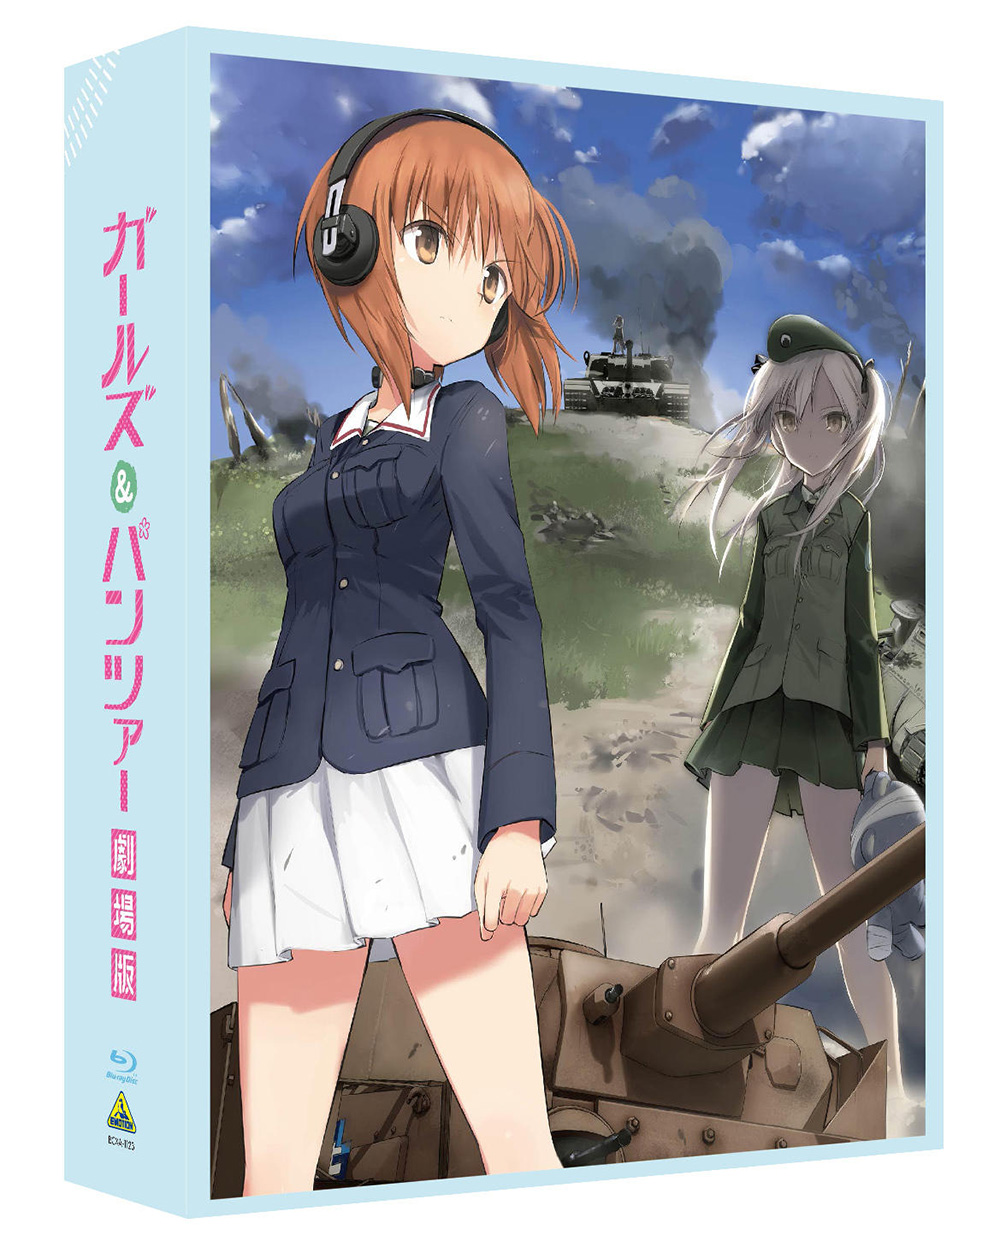 Girls-Und-Panzer-Movie-Blu-ray-Box